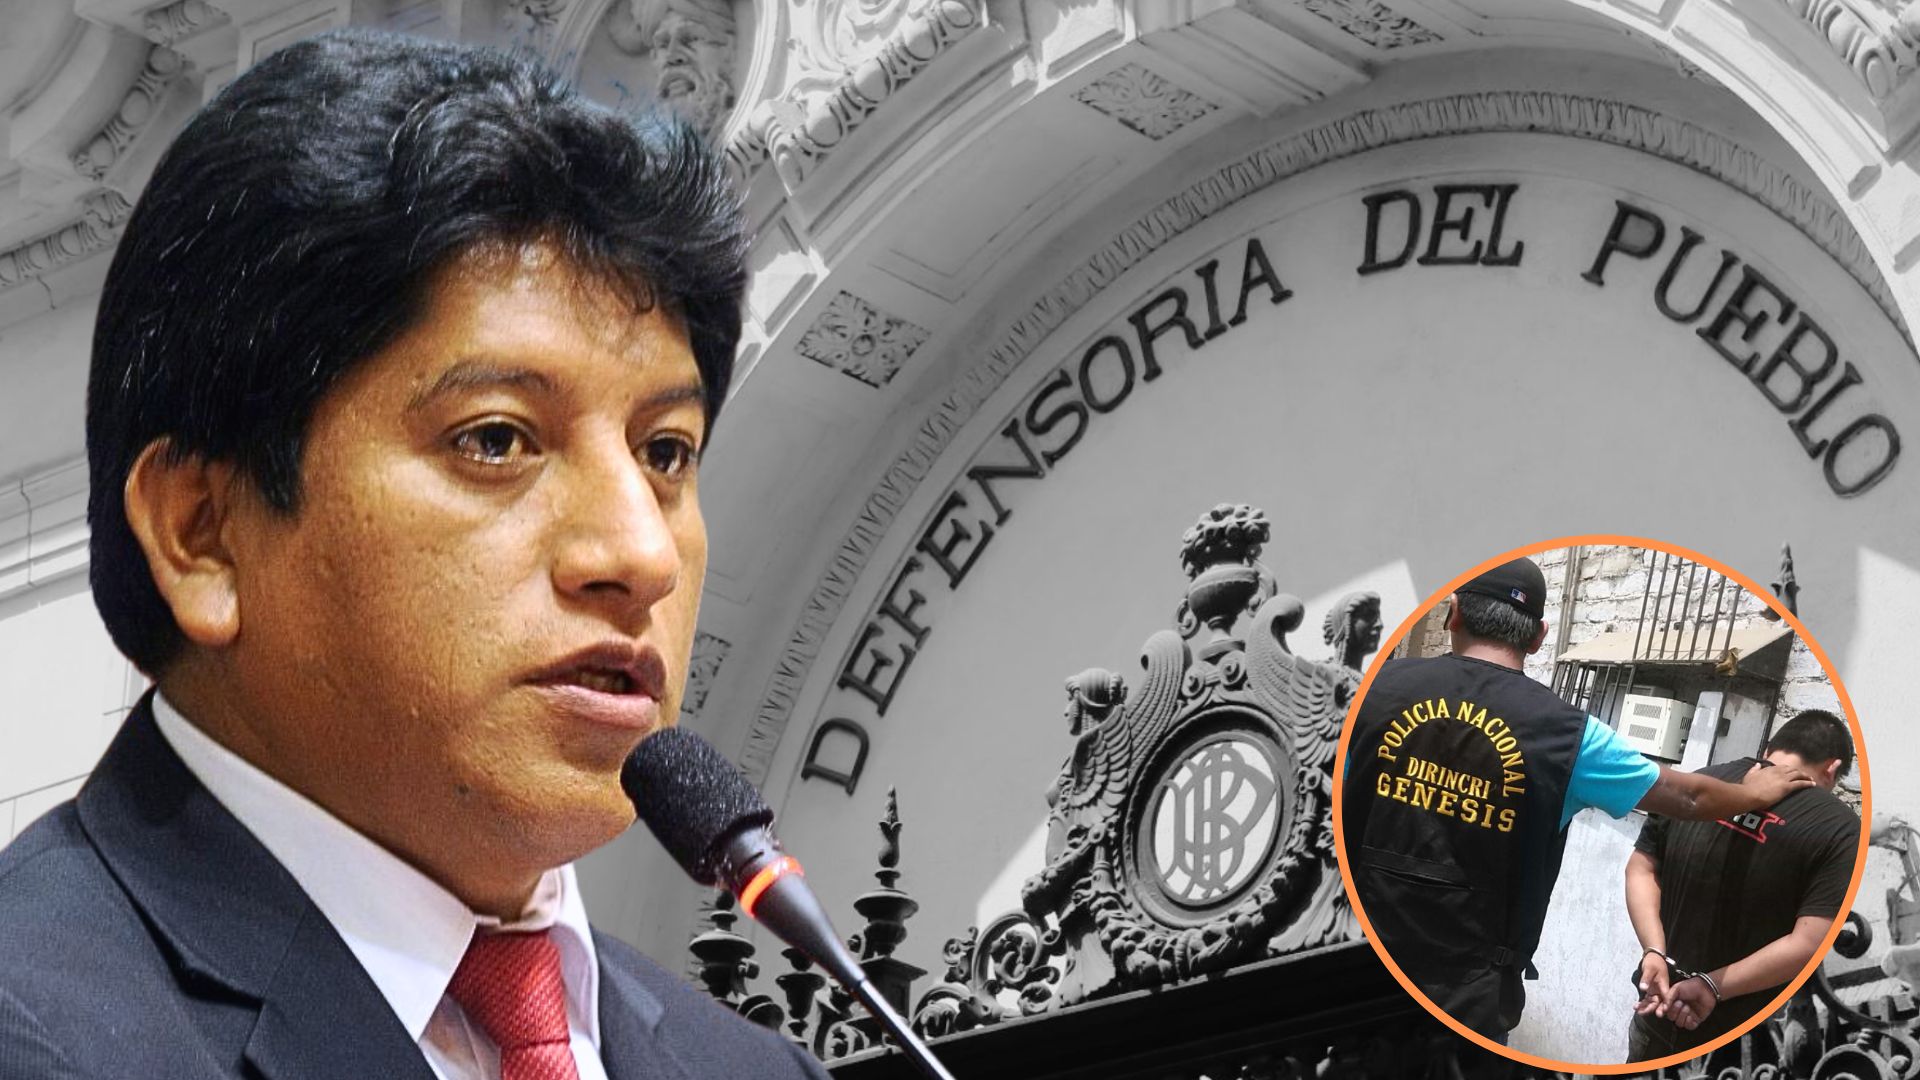 Defensor del Pueblo sobre delincuencia en Perú: “El ladrón en su momento ha sido víctima del abandono”